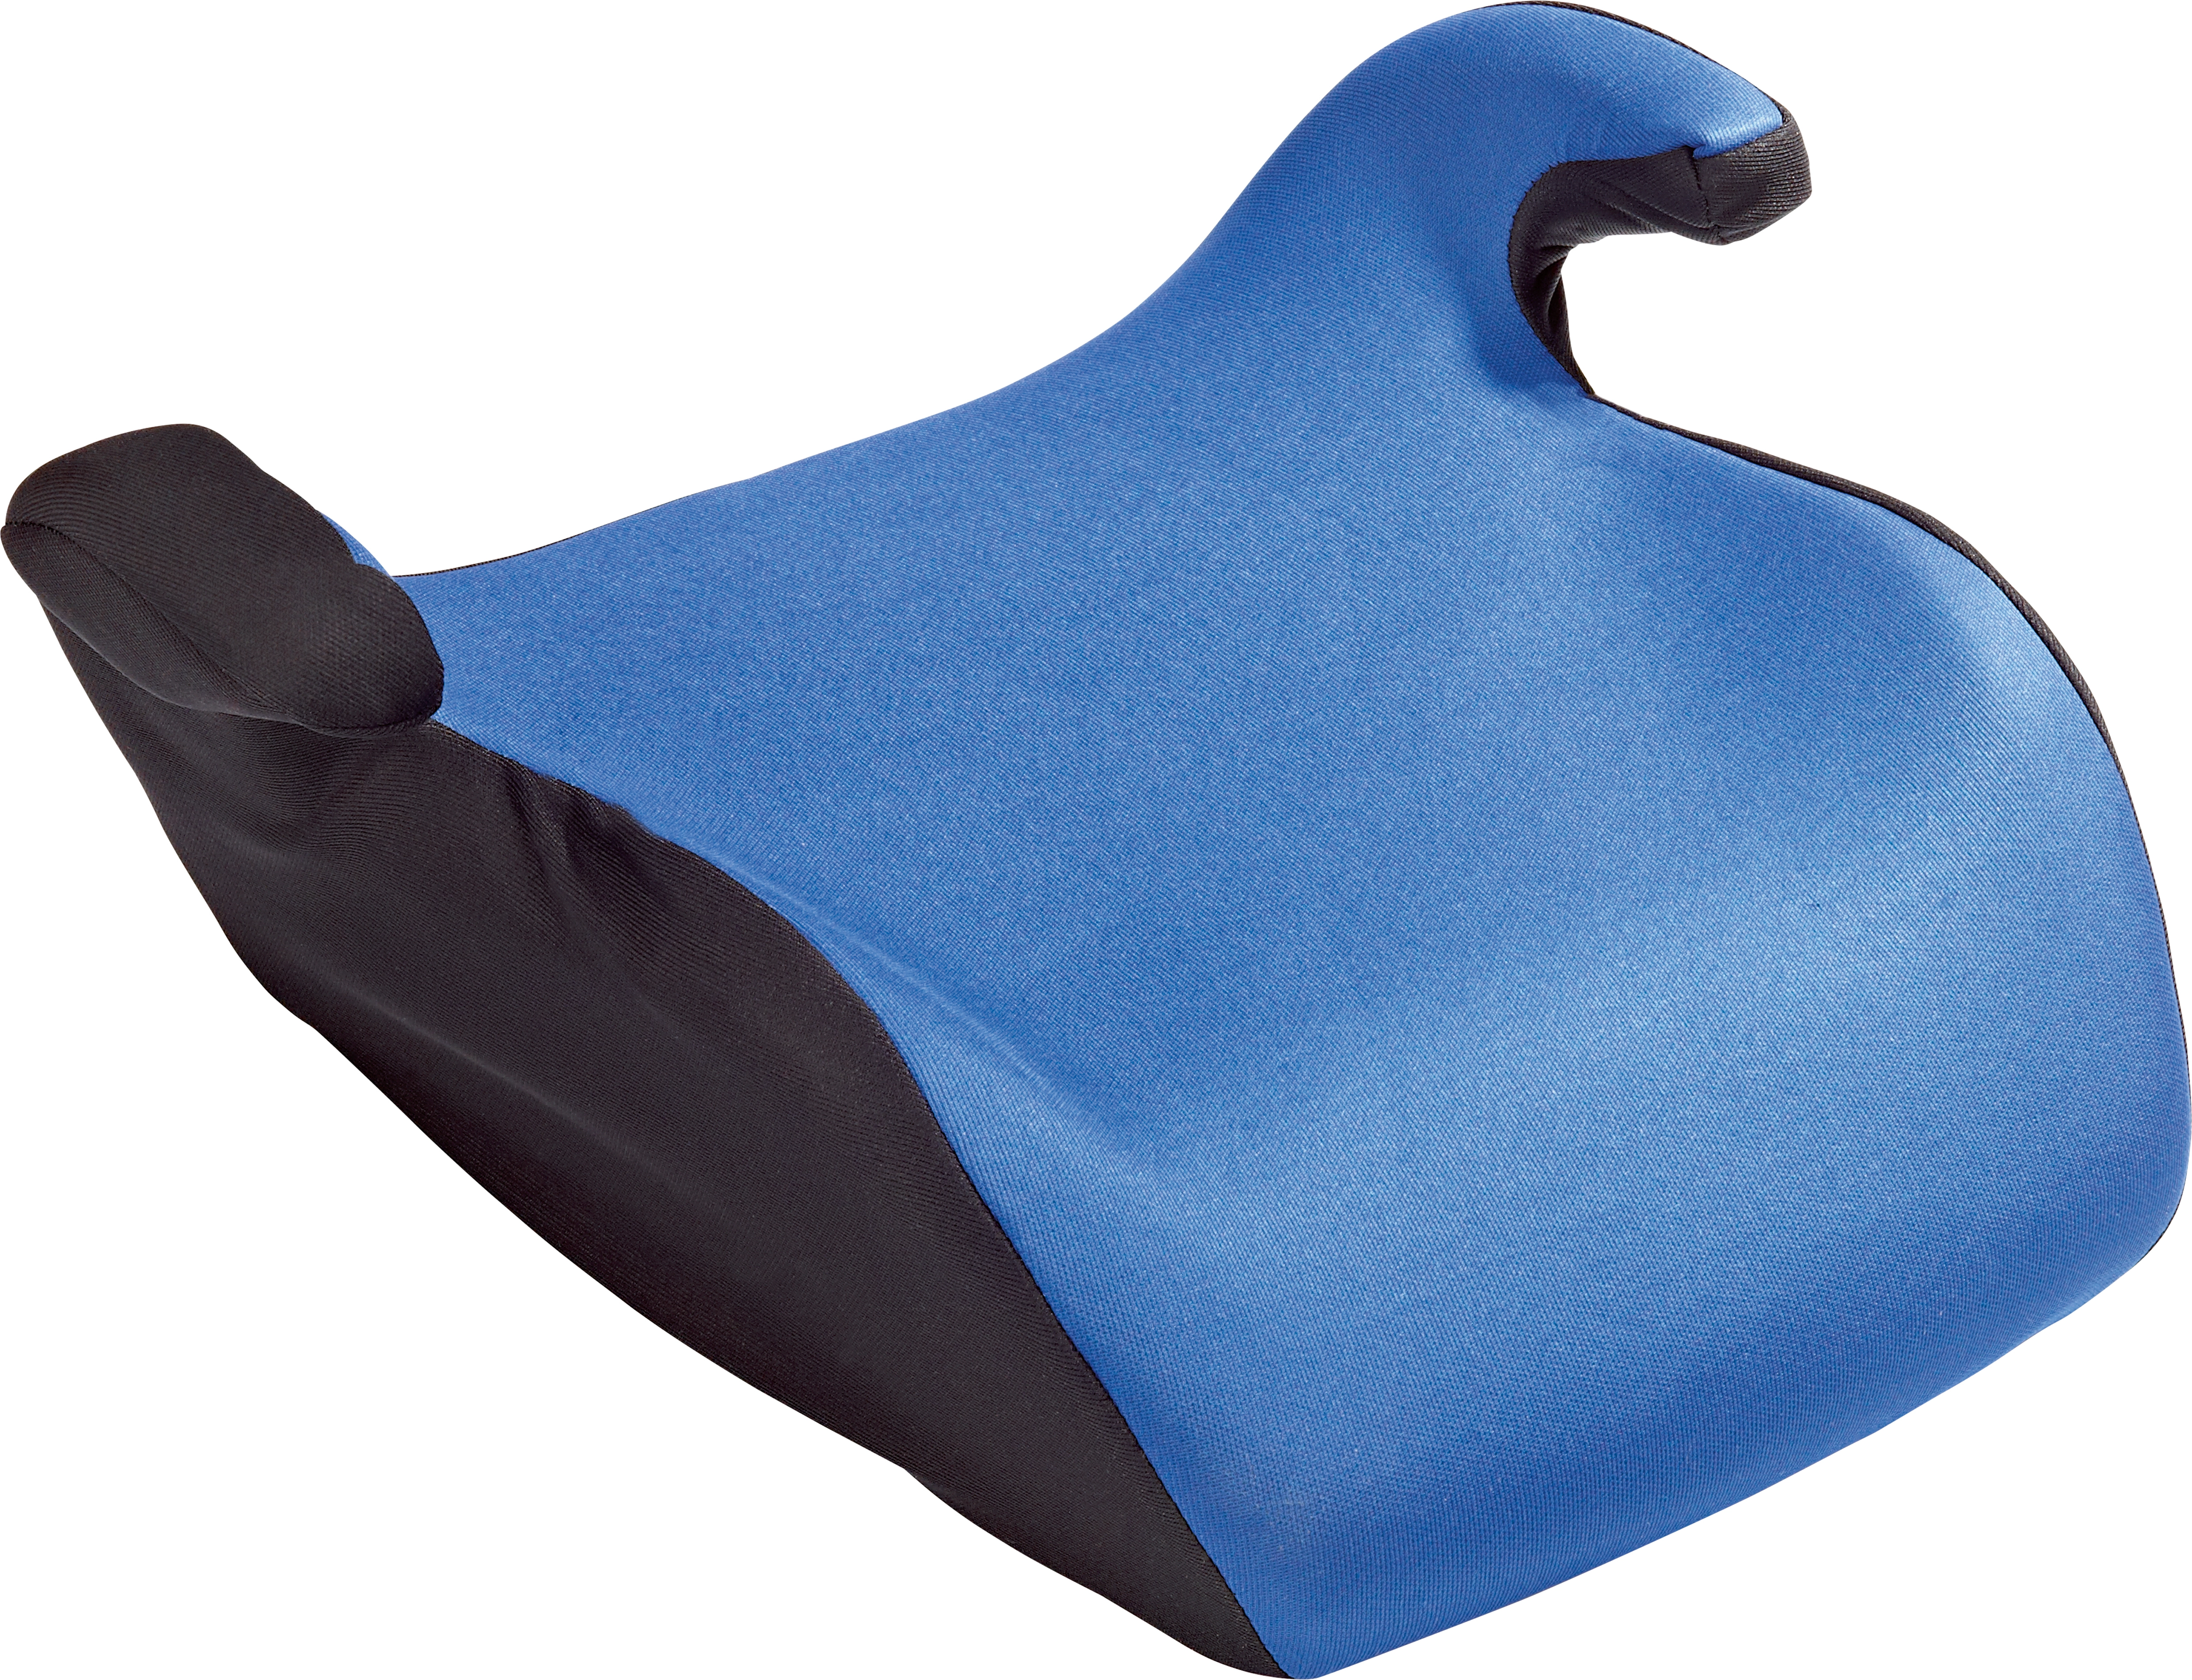 Kindersitzunterlage Polyester / Schaumstoff 87 x 46 cm kaufen bei OBI